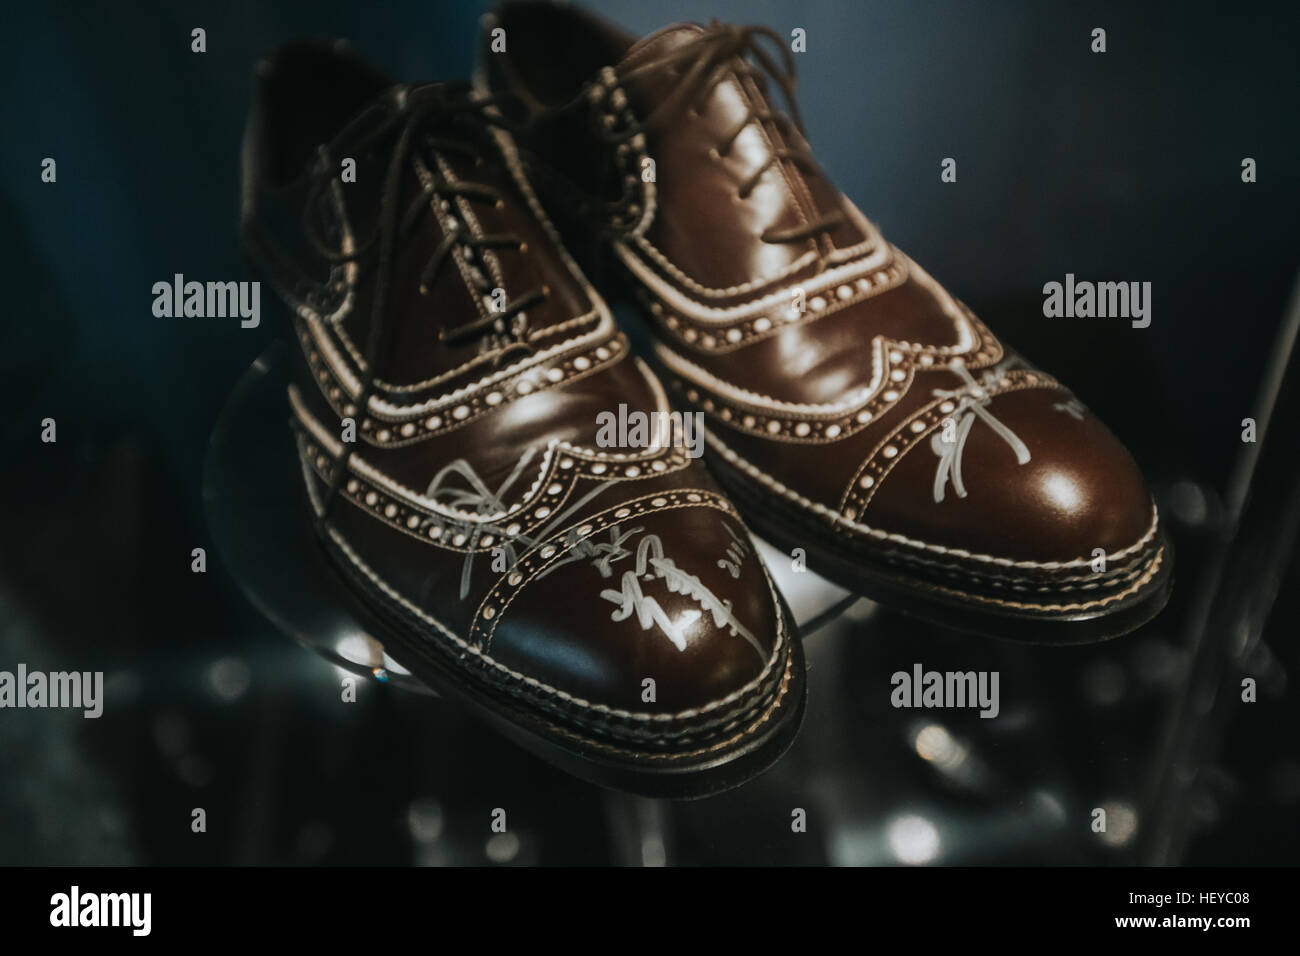 Tony Leung film cinese attore indossava questo paio di scarpe con il suo autografo Foto Stock